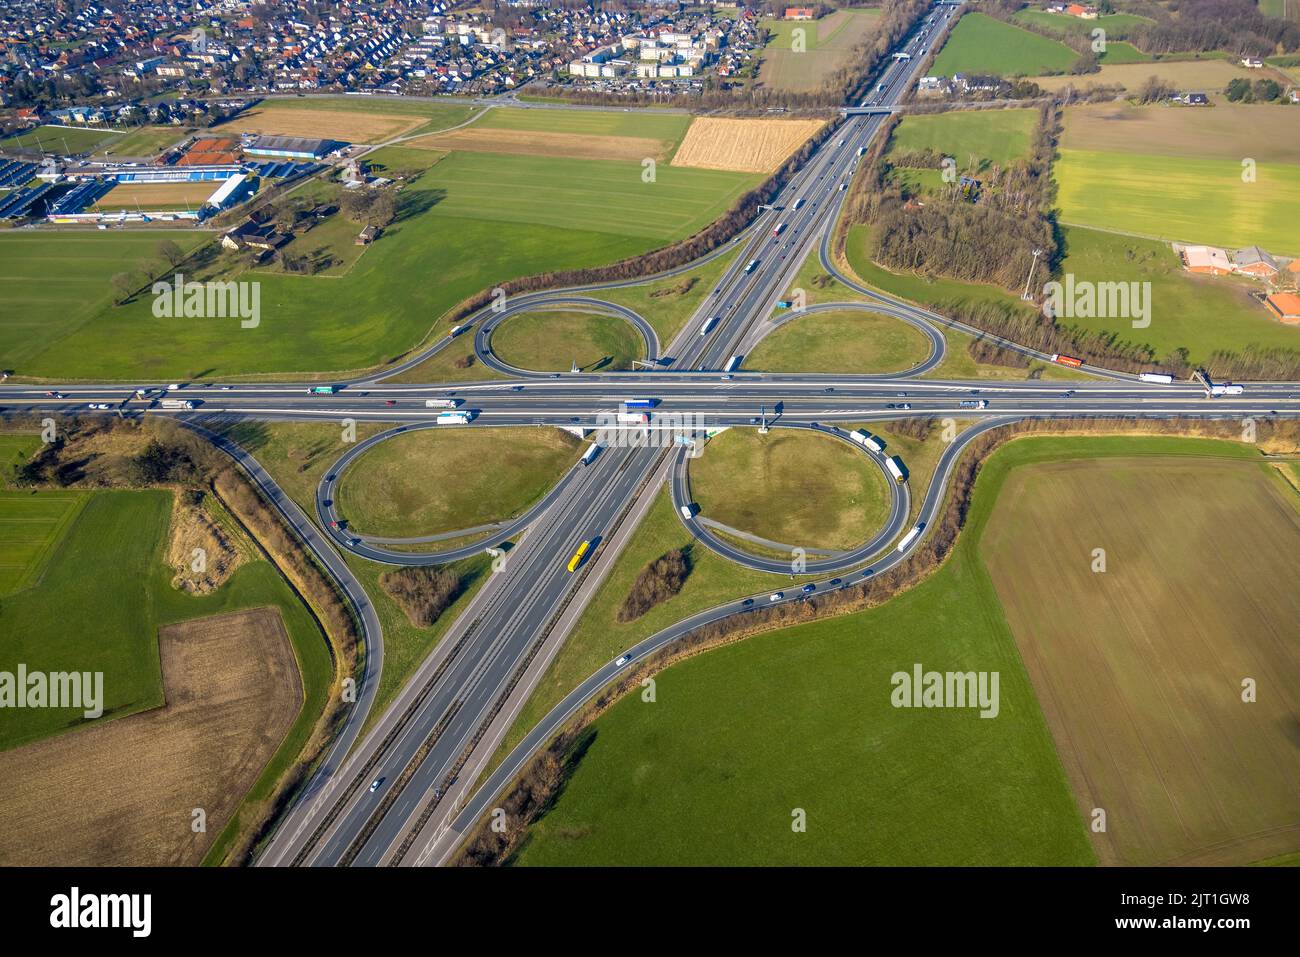 Fotografia aerea, svincolo autostradale Lotte/Osnabrück, superstrada A1 e superstrada A30, Lotte, Tecklenburger Land, Renania settentrionale-Vestfalia, Germania, superstrada, ecc. Foto Stock